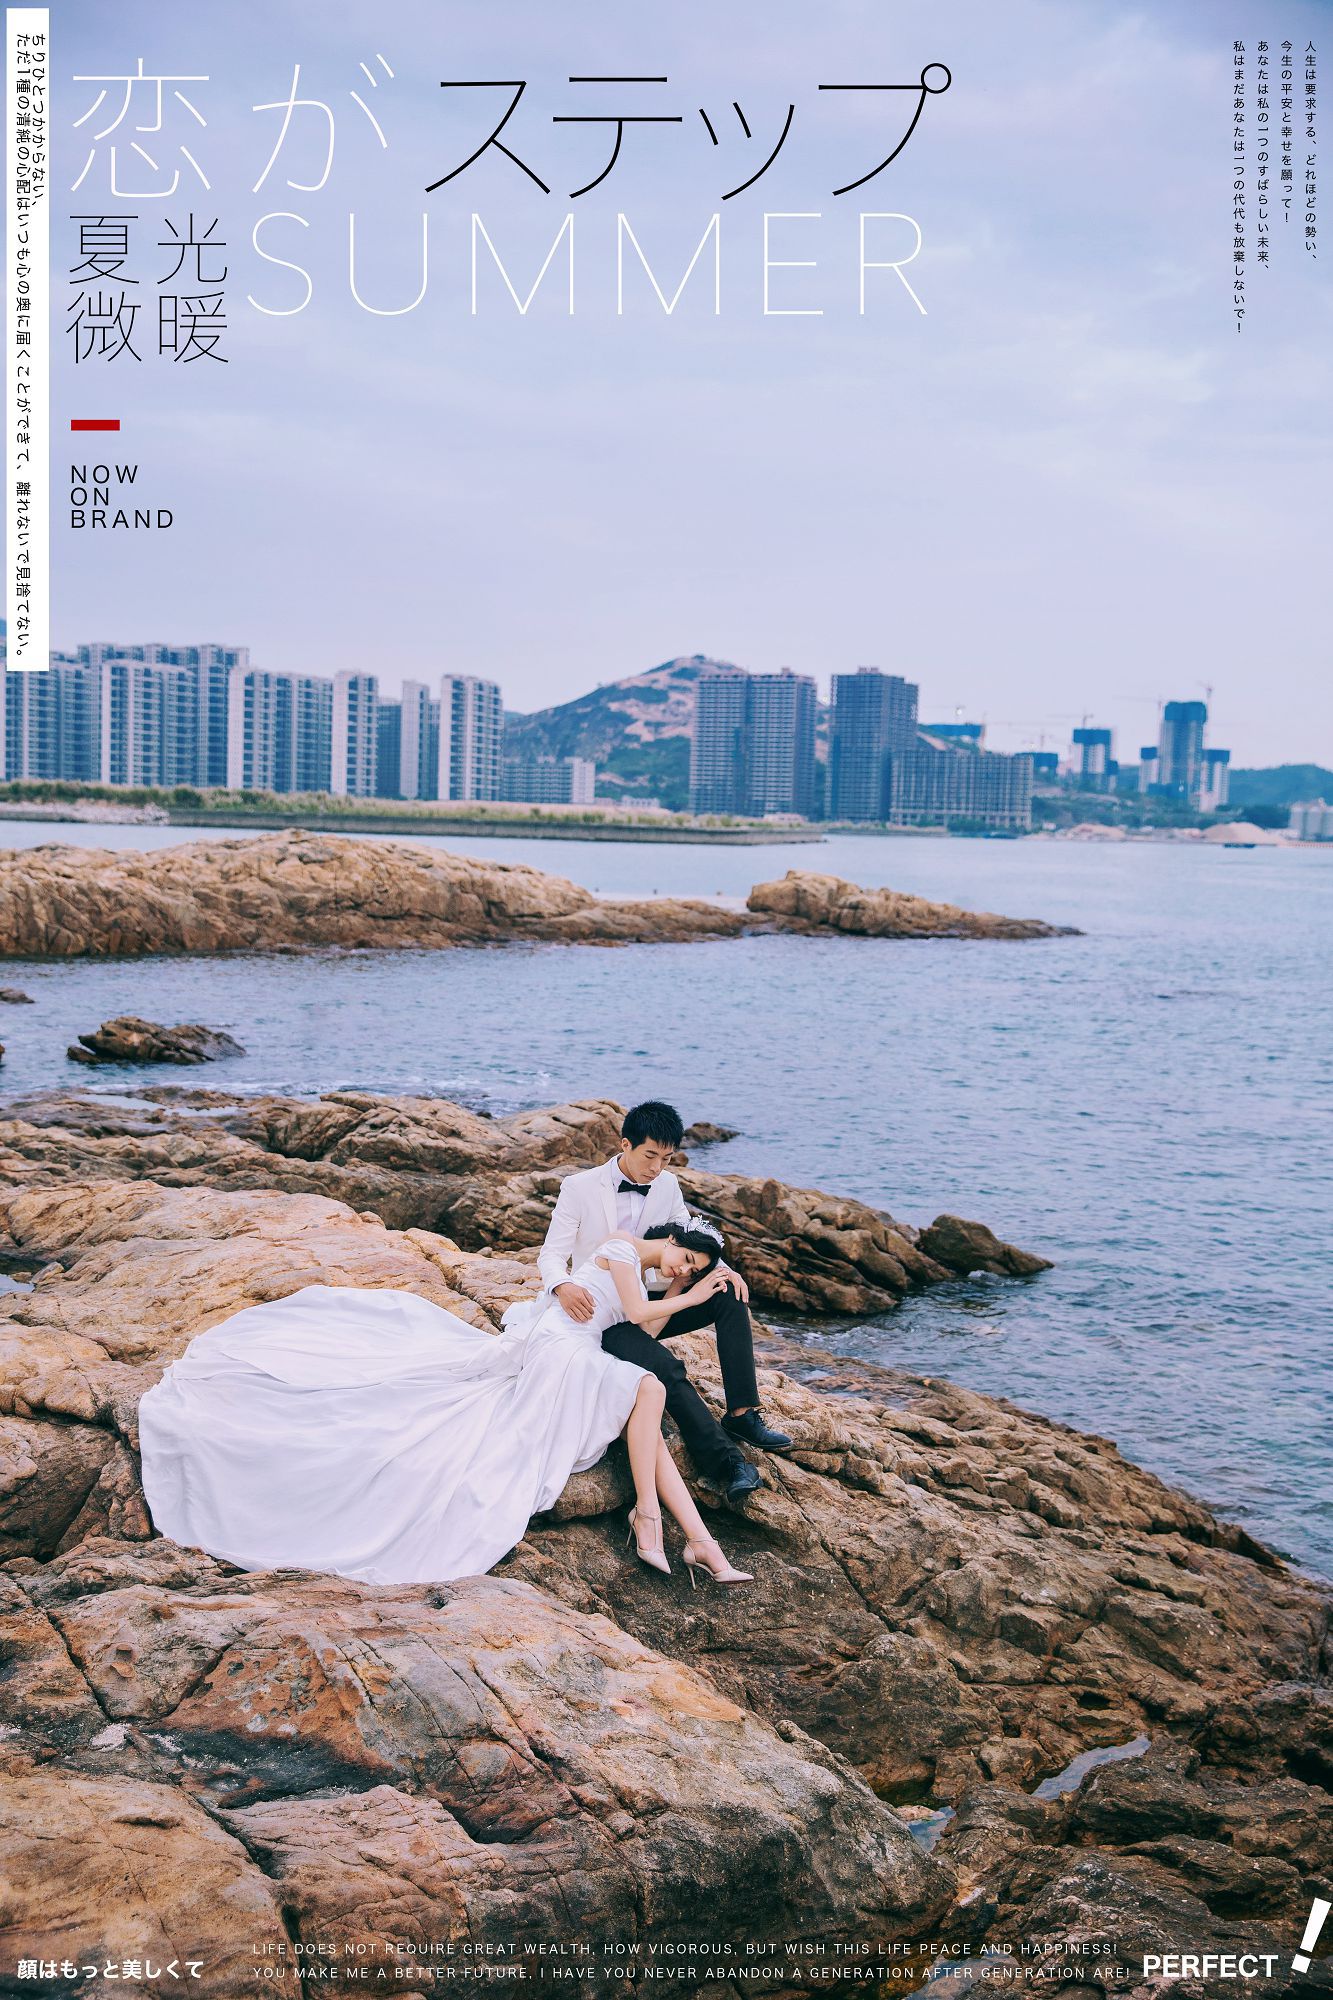 2019年7月广州婚纱摄影,佛山婚纱照,婚纱照图片